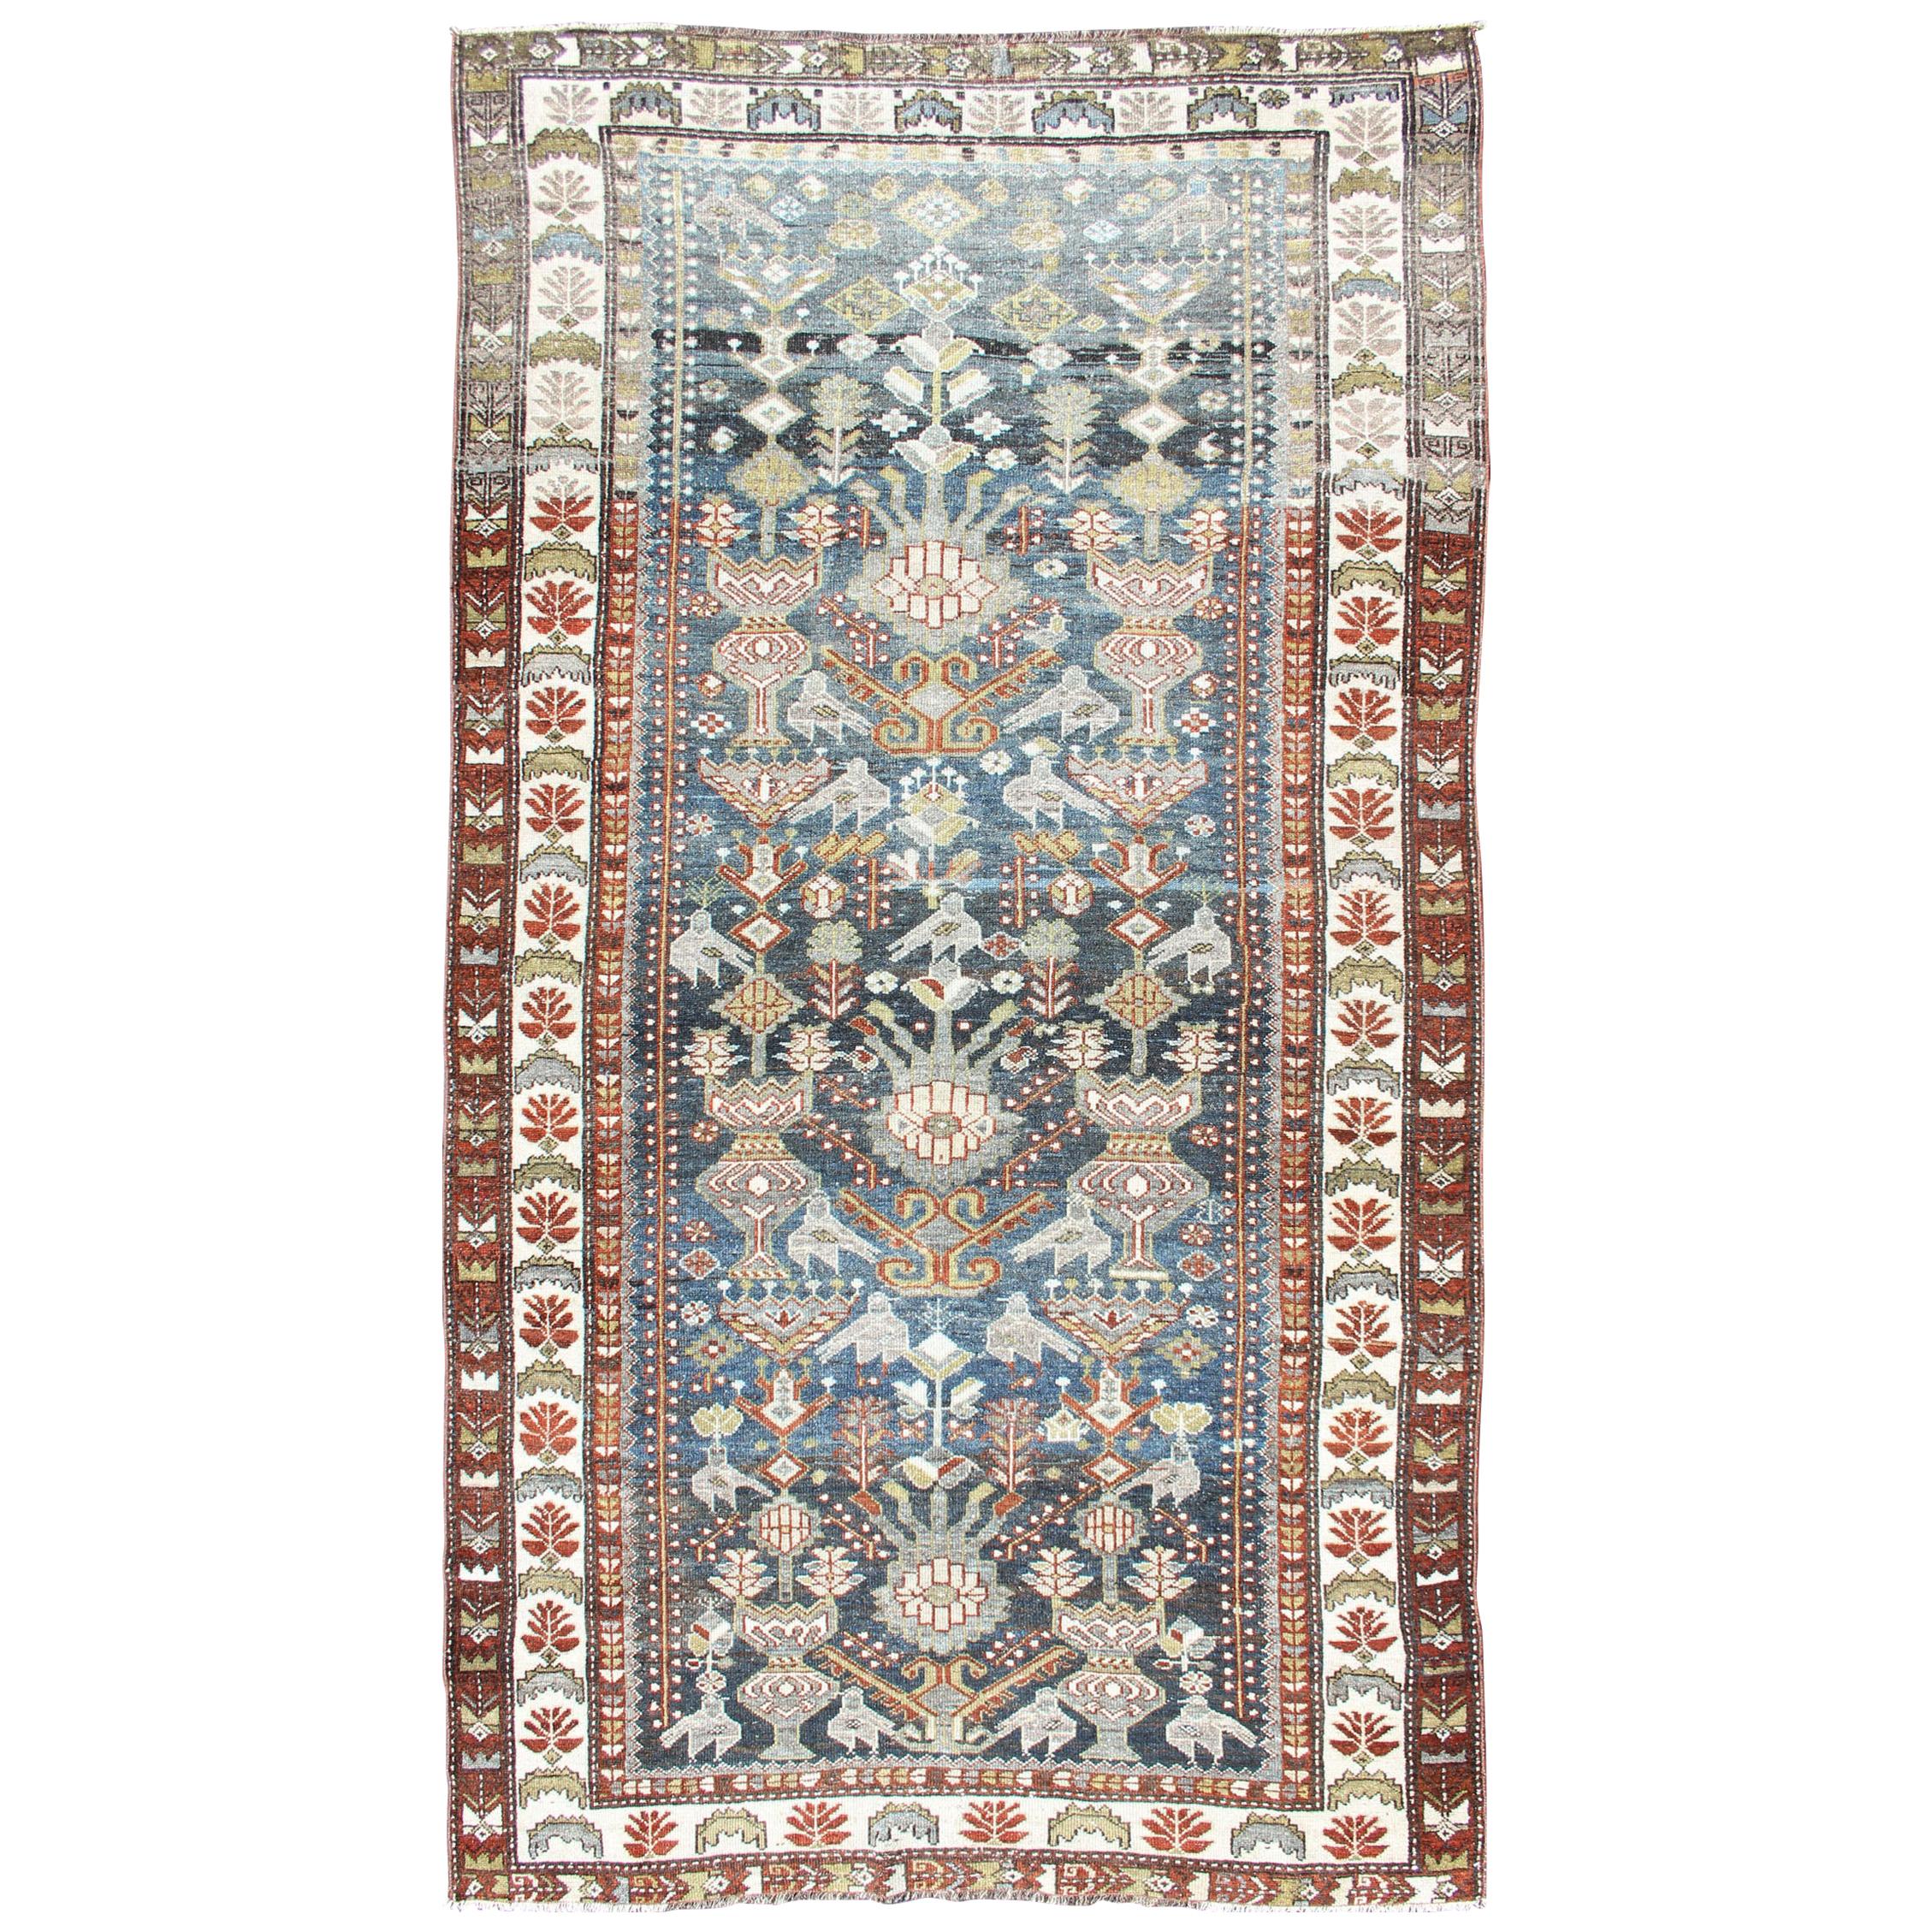  Antiker persischer Bakhitari-Teppich mit All-Over-Muster auf Stahlblauem Hintergrund